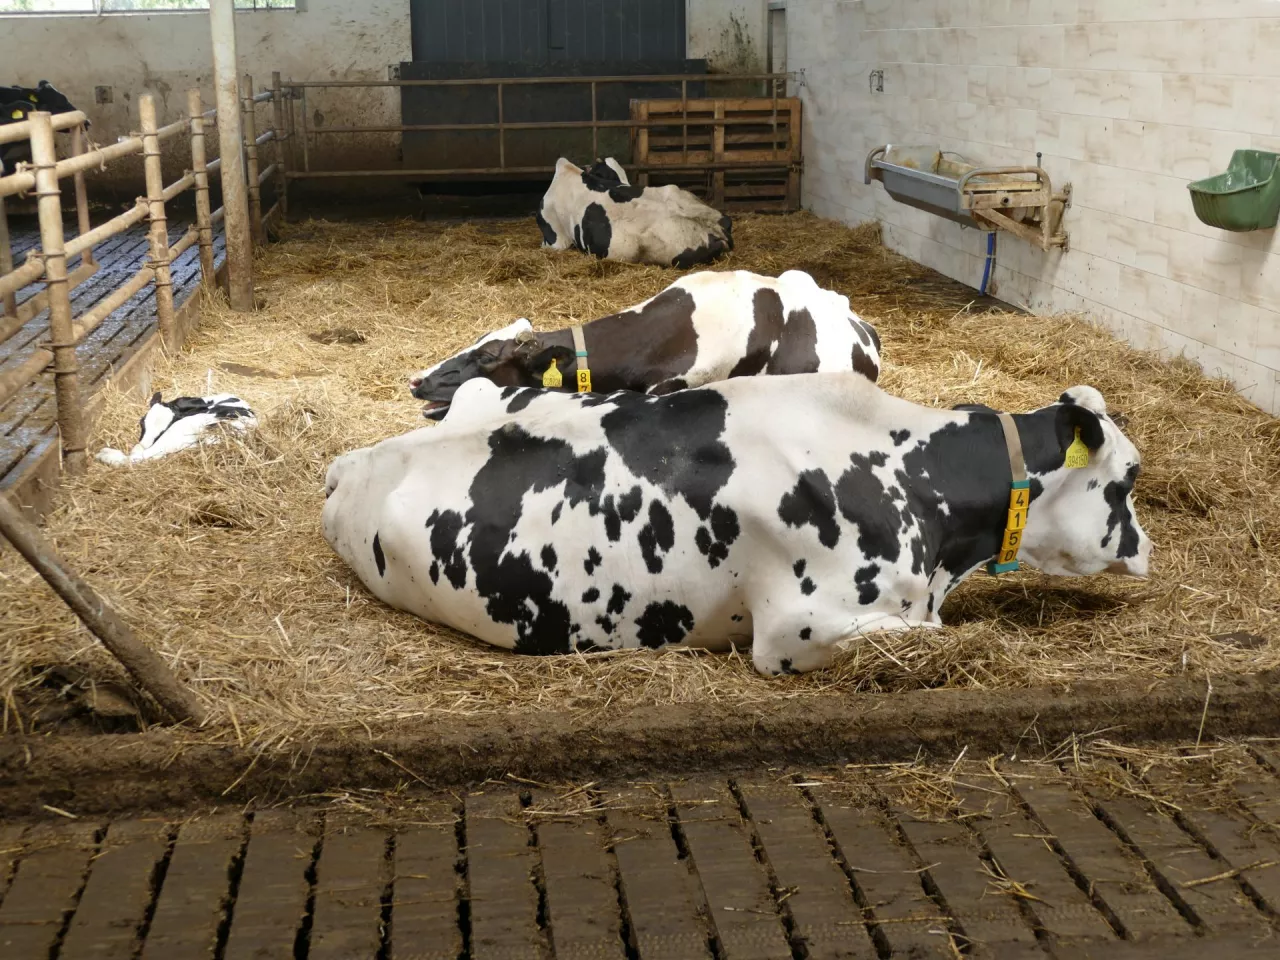 Najnowsze badania potwierdzają, że krowy zasuszone poddane stresowi cieplnemu przez cały okres zasuszenia, produkują średnio 4,5 kg mleka dziennie mniej w kolejnej laktacji w porównaniu z krowami nienarażonymi na stres cieplny